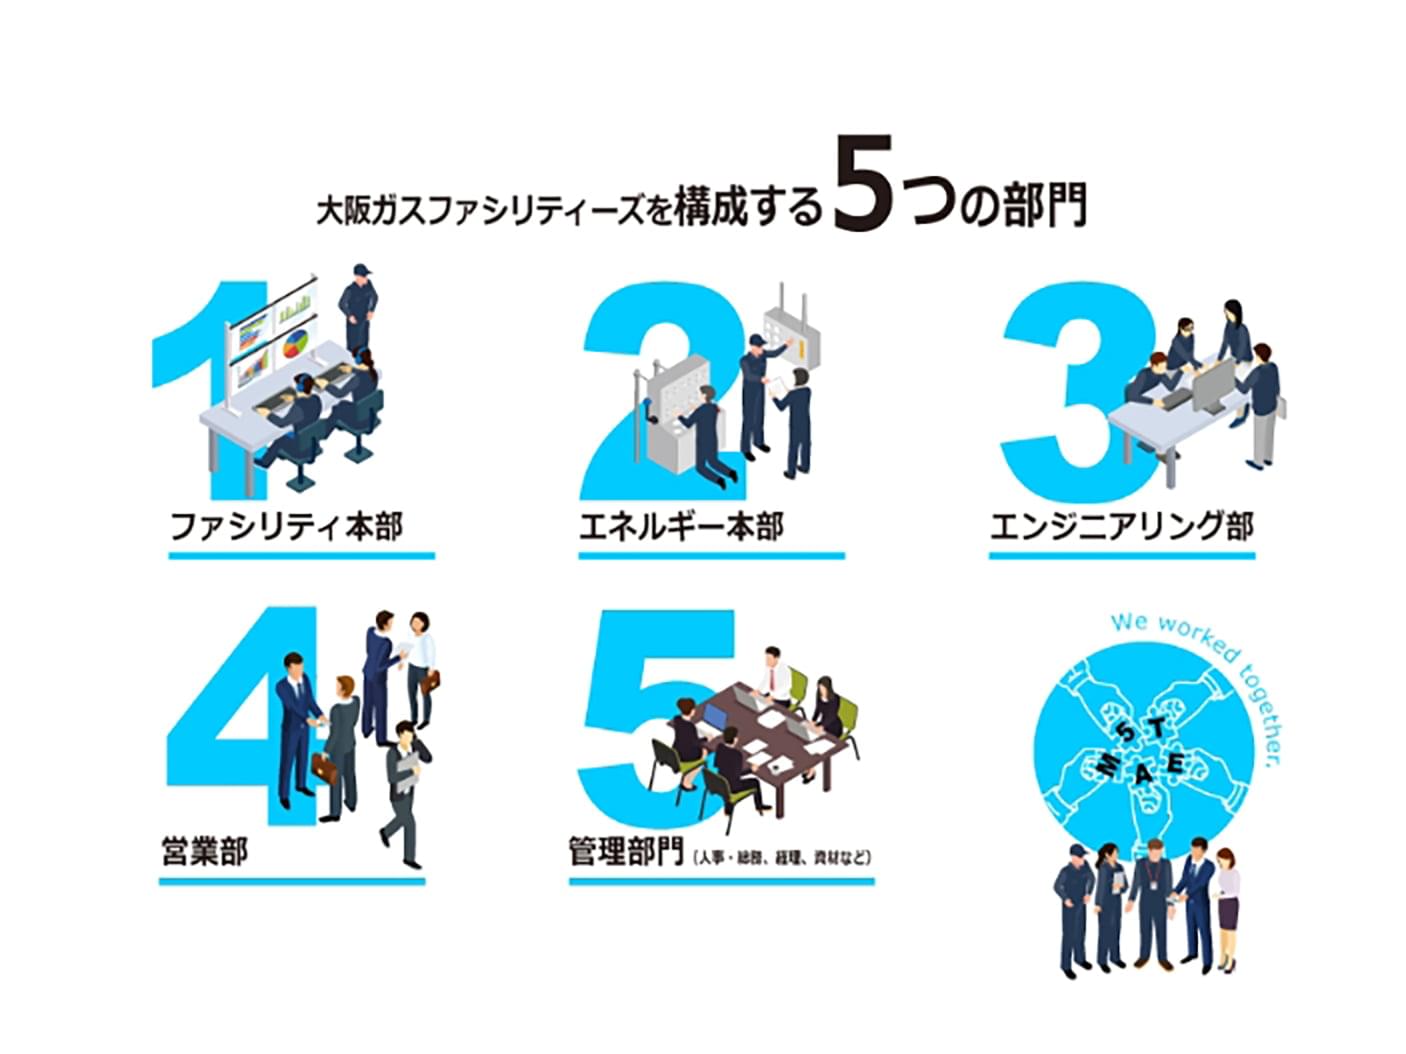 大阪ガスファシリティーズを構成する5つの部門